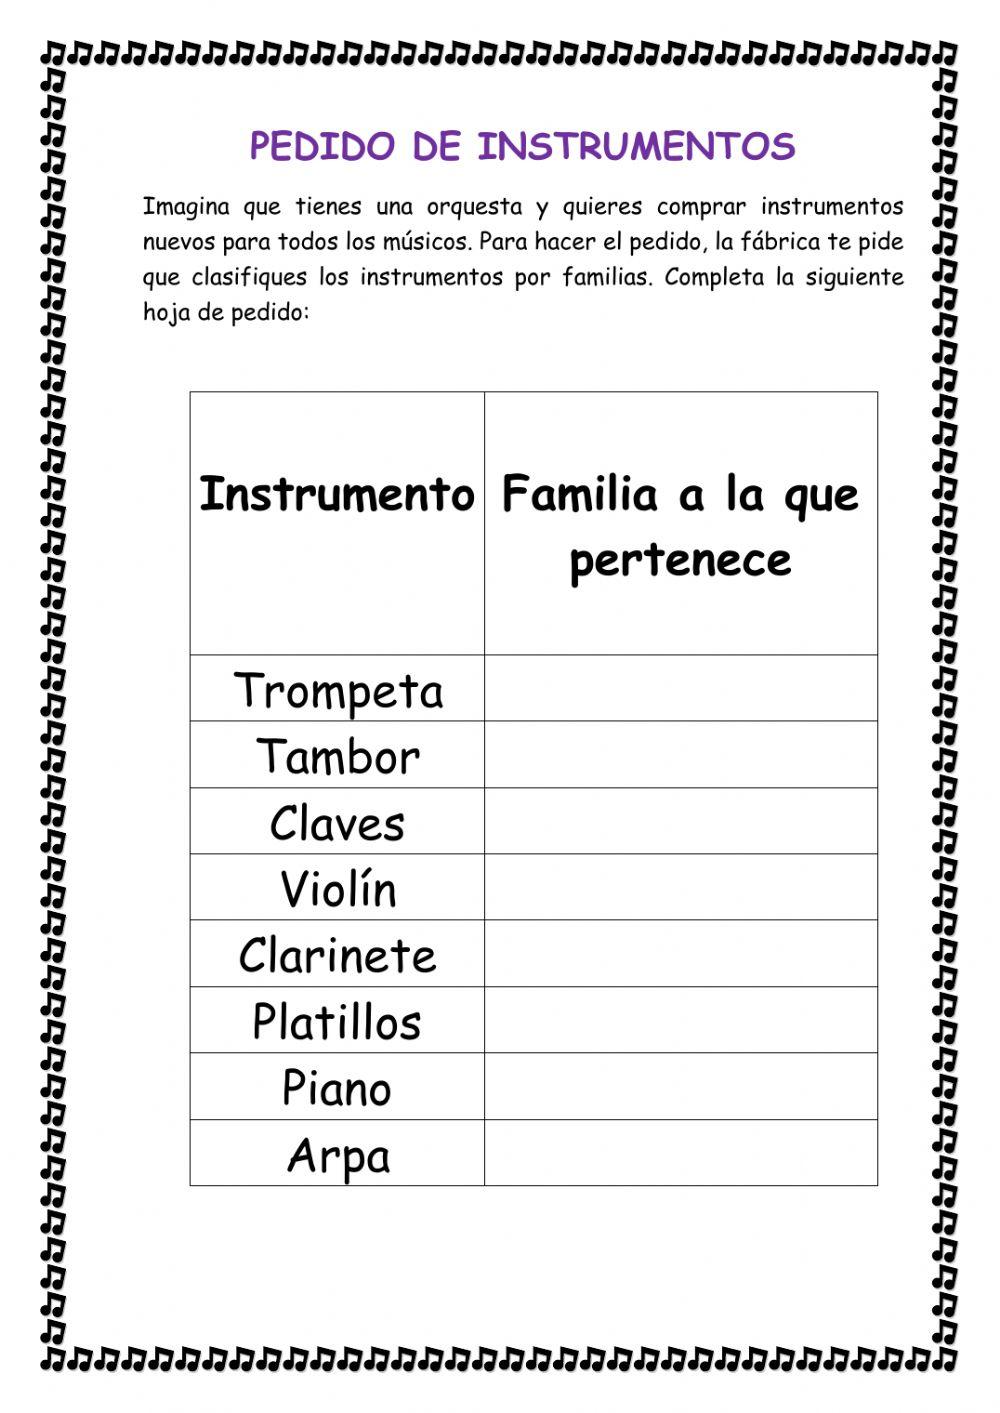 Seleccionar familias de instrumentos